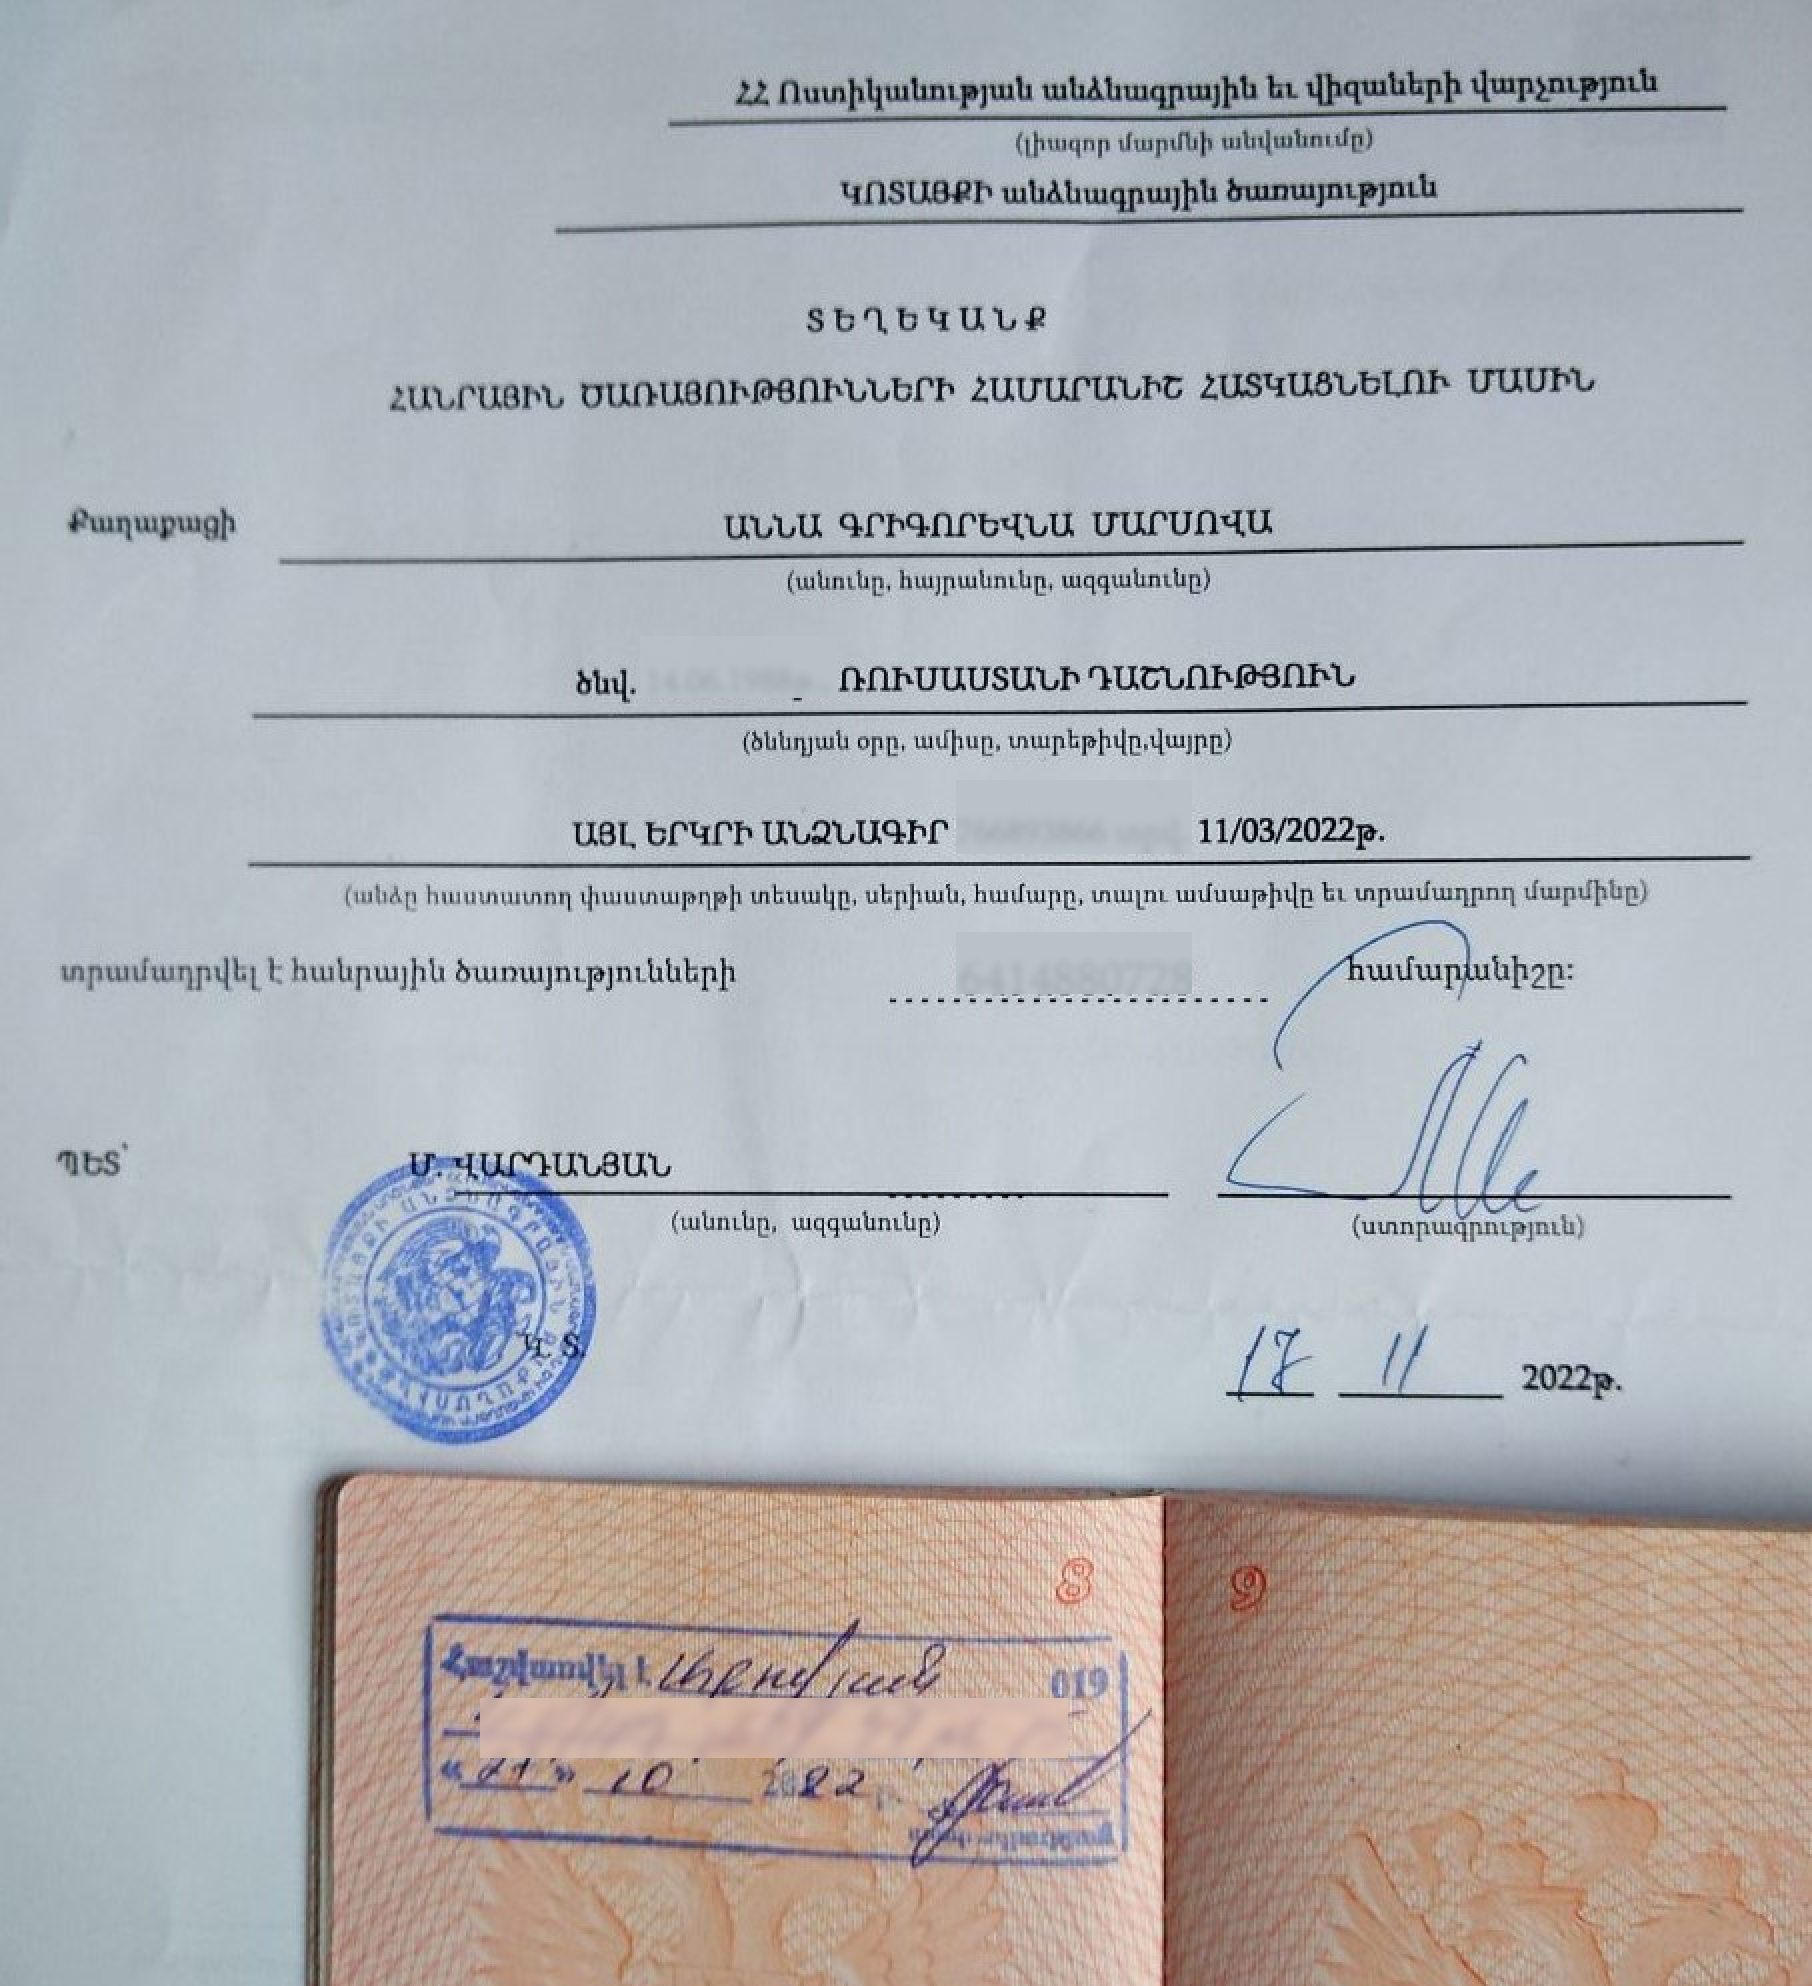 Регистрация и соцкарта — подтверждение легального проживания в Армении